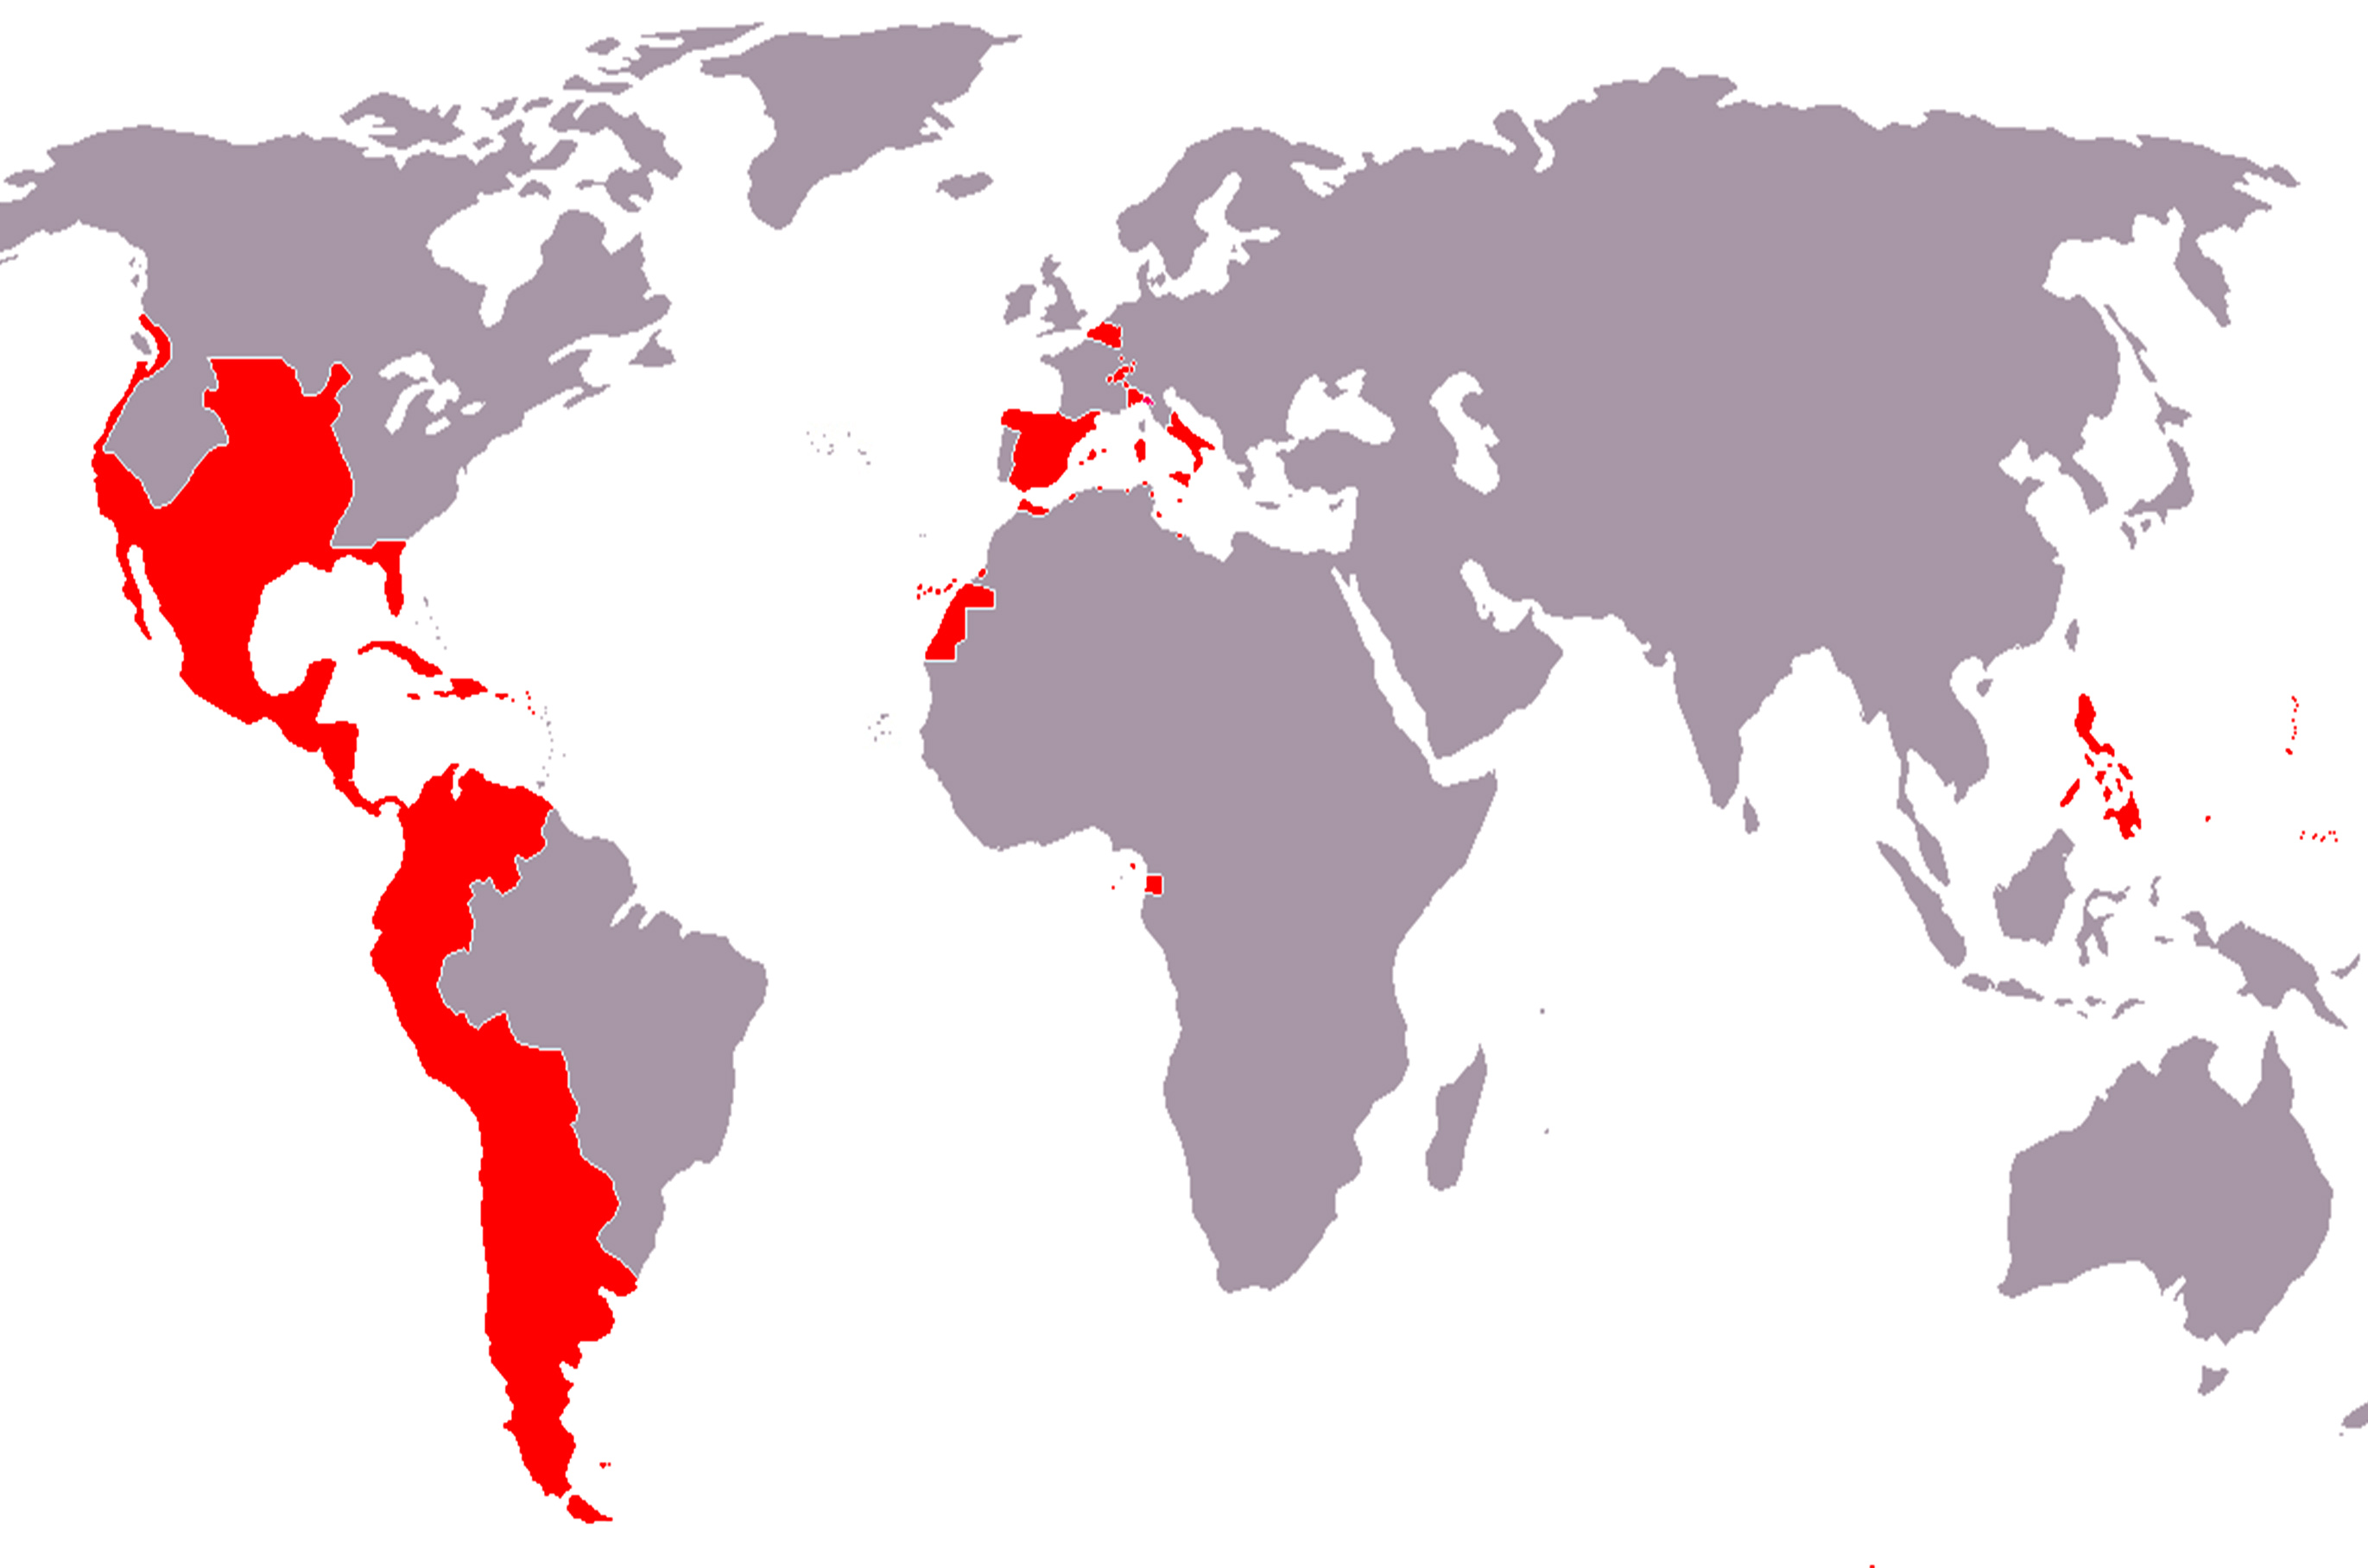 西班牙帝国是世界上第一批真正意义上的全球帝国和殖民帝国之一,也是